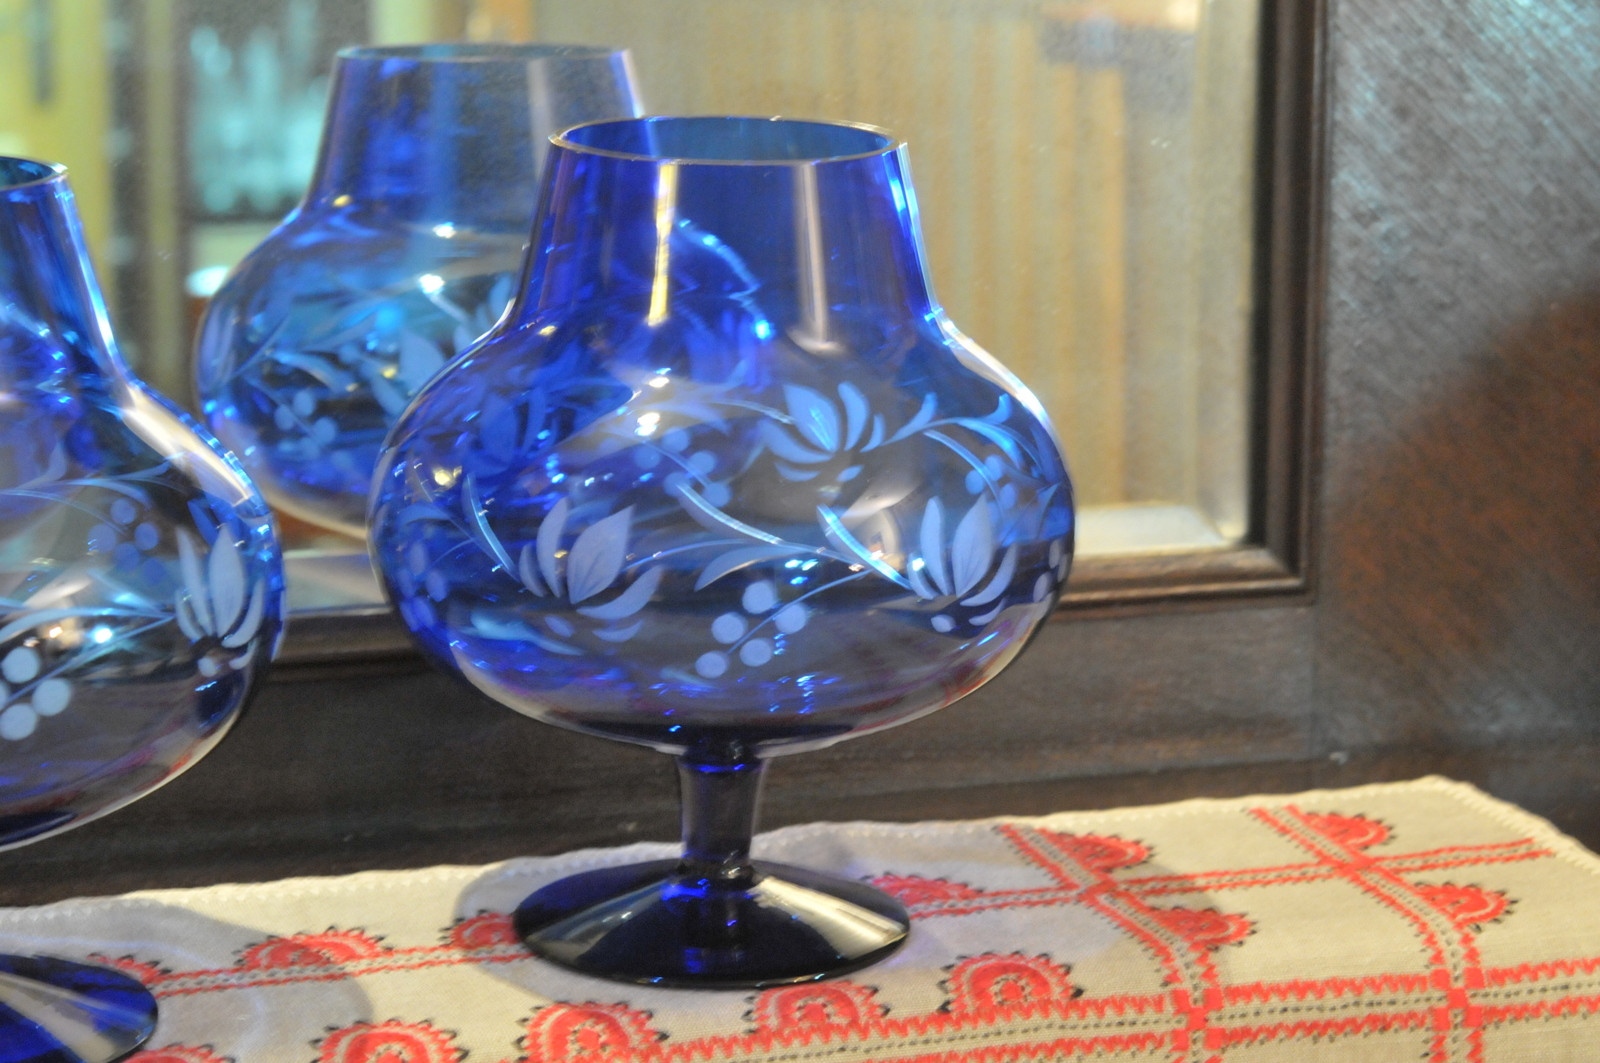 25 Popular Kosta Boda Blue Vase 2024 free download kosta boda blue vase of 2 duac2bce kielichy art glass szkac282o kobaltowe szlif 7028895621 throughout 2 duac2bce kielichy art glass szkac282o kobaltowe szlif 7028895621 allegro pl wiac299cej